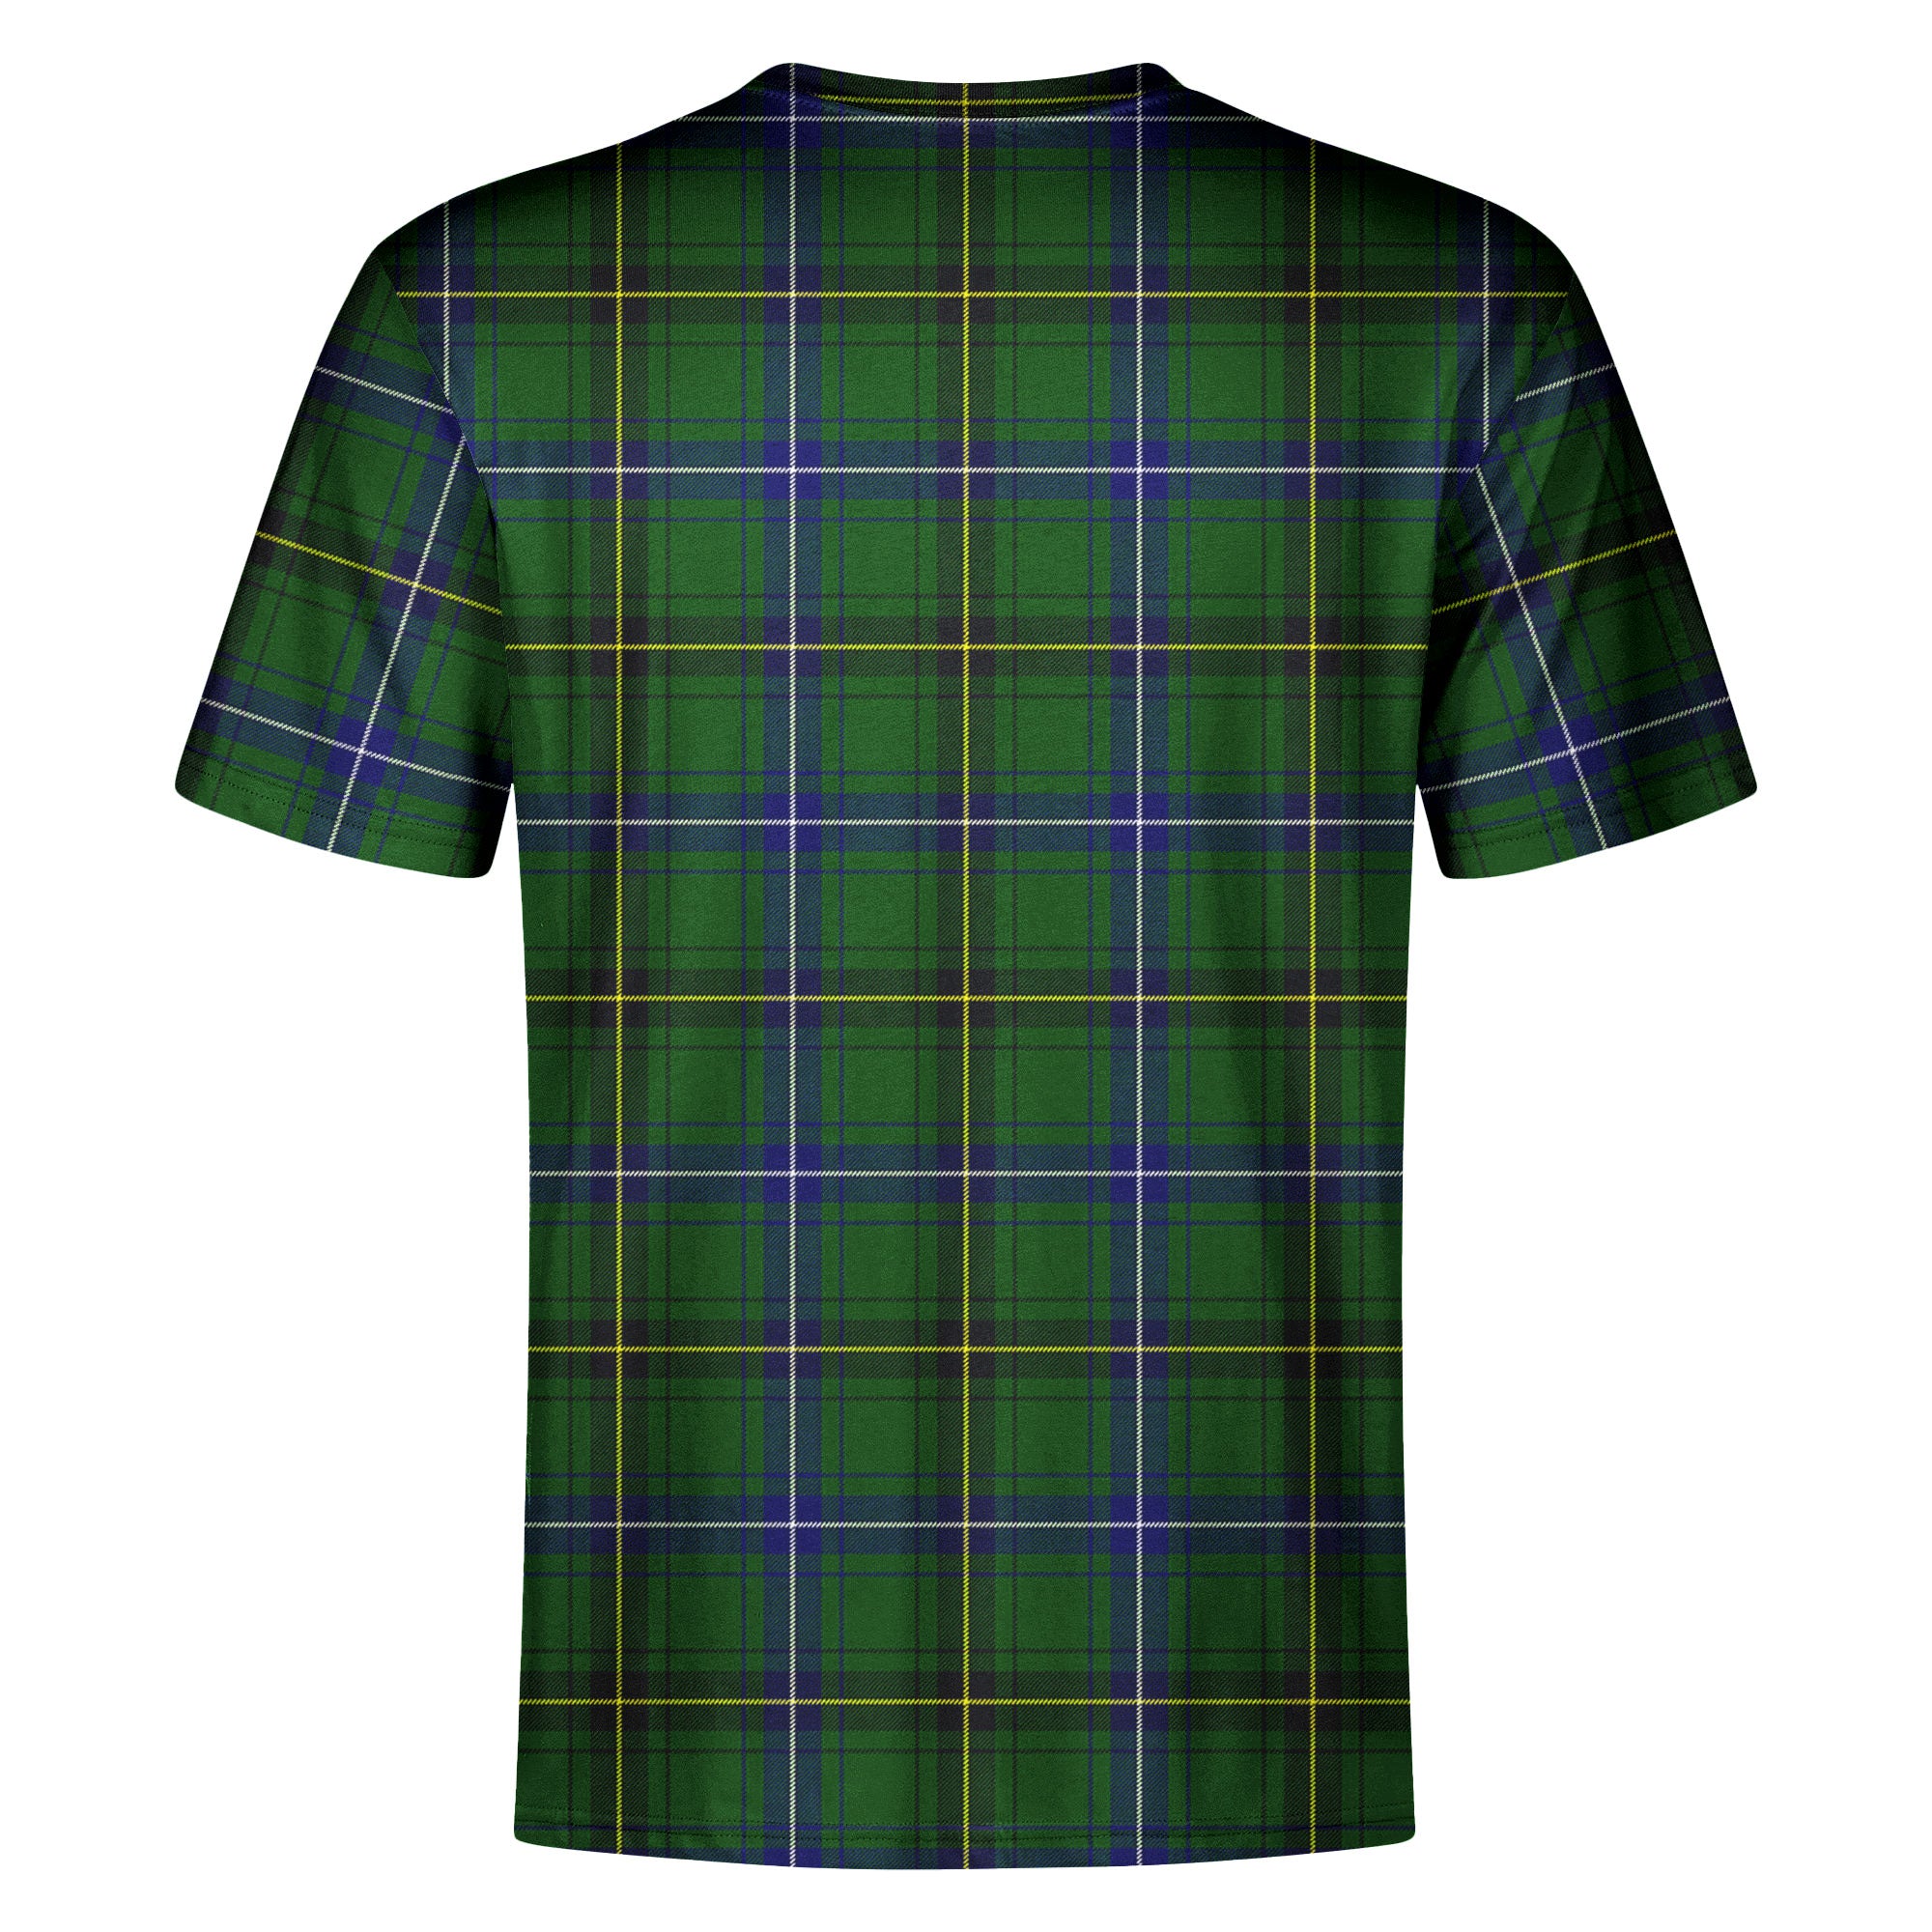 Henderson Modern Tartan Crest T-shirt